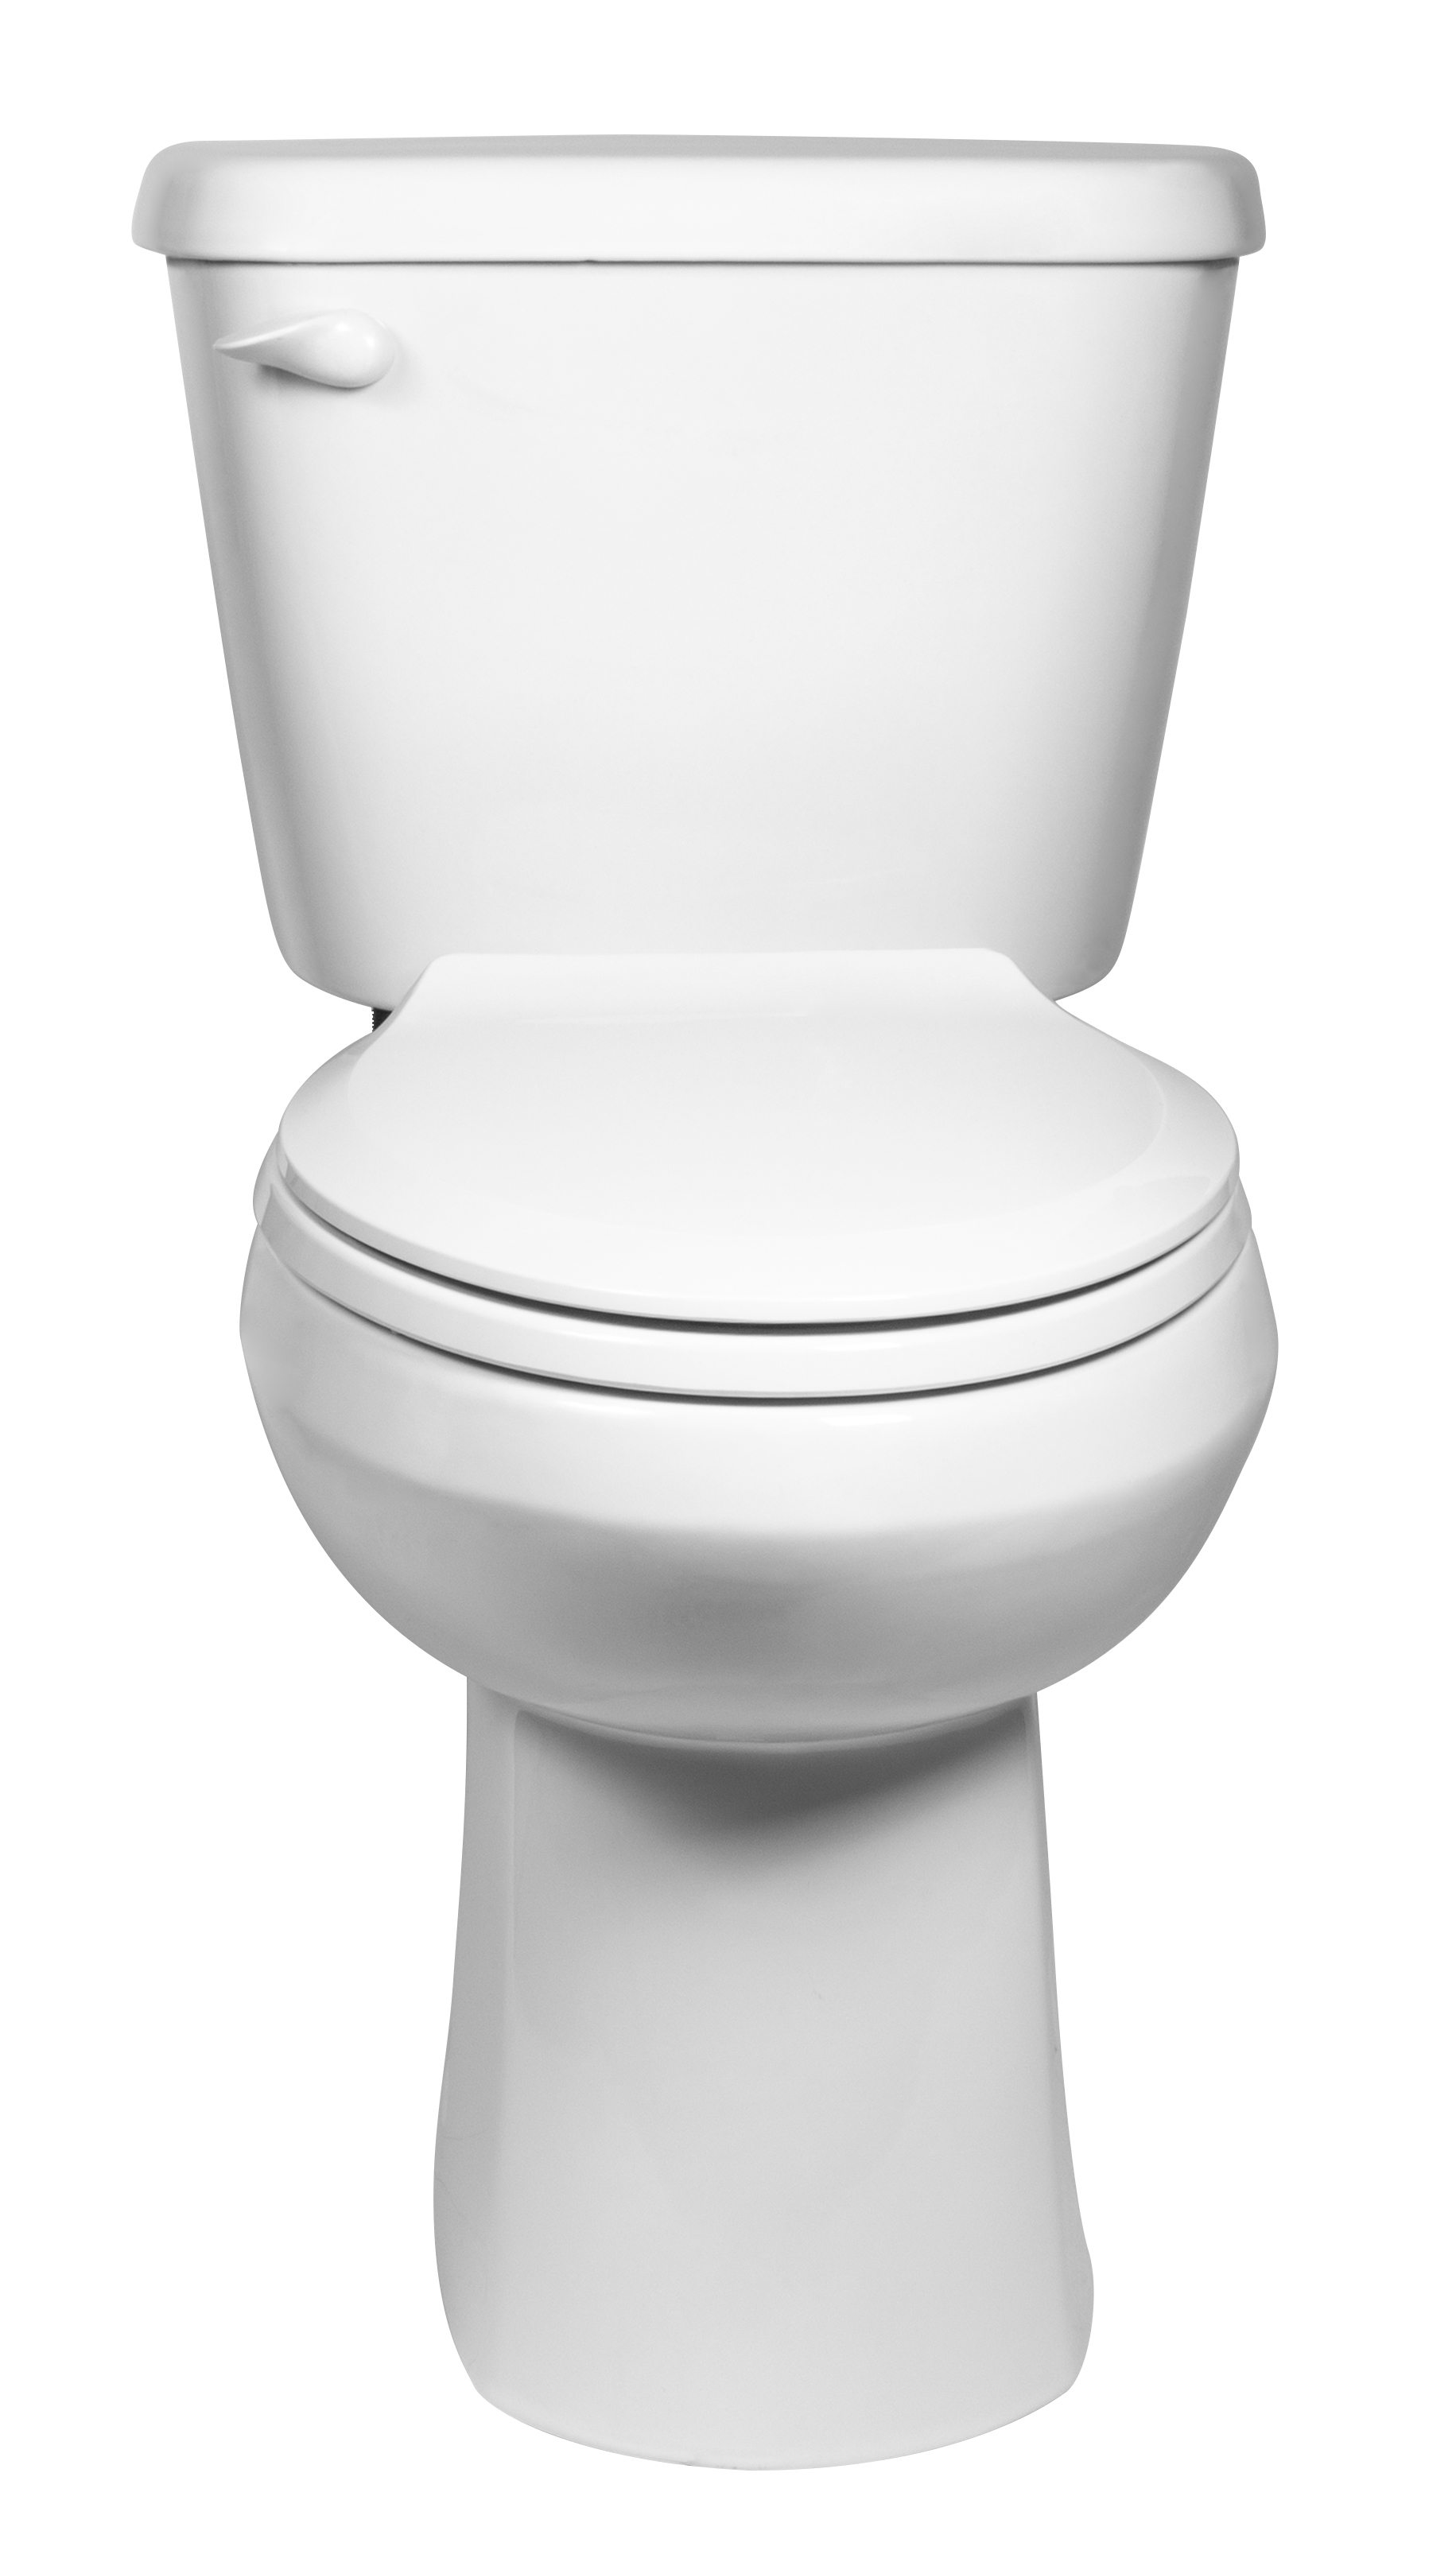 Toilette complète Sonoma, 2 pièces, 1,28 gpc/4,8 lpc, à cuvette allongée à hauteur de chaise et réservoir avec doublure, avec siège